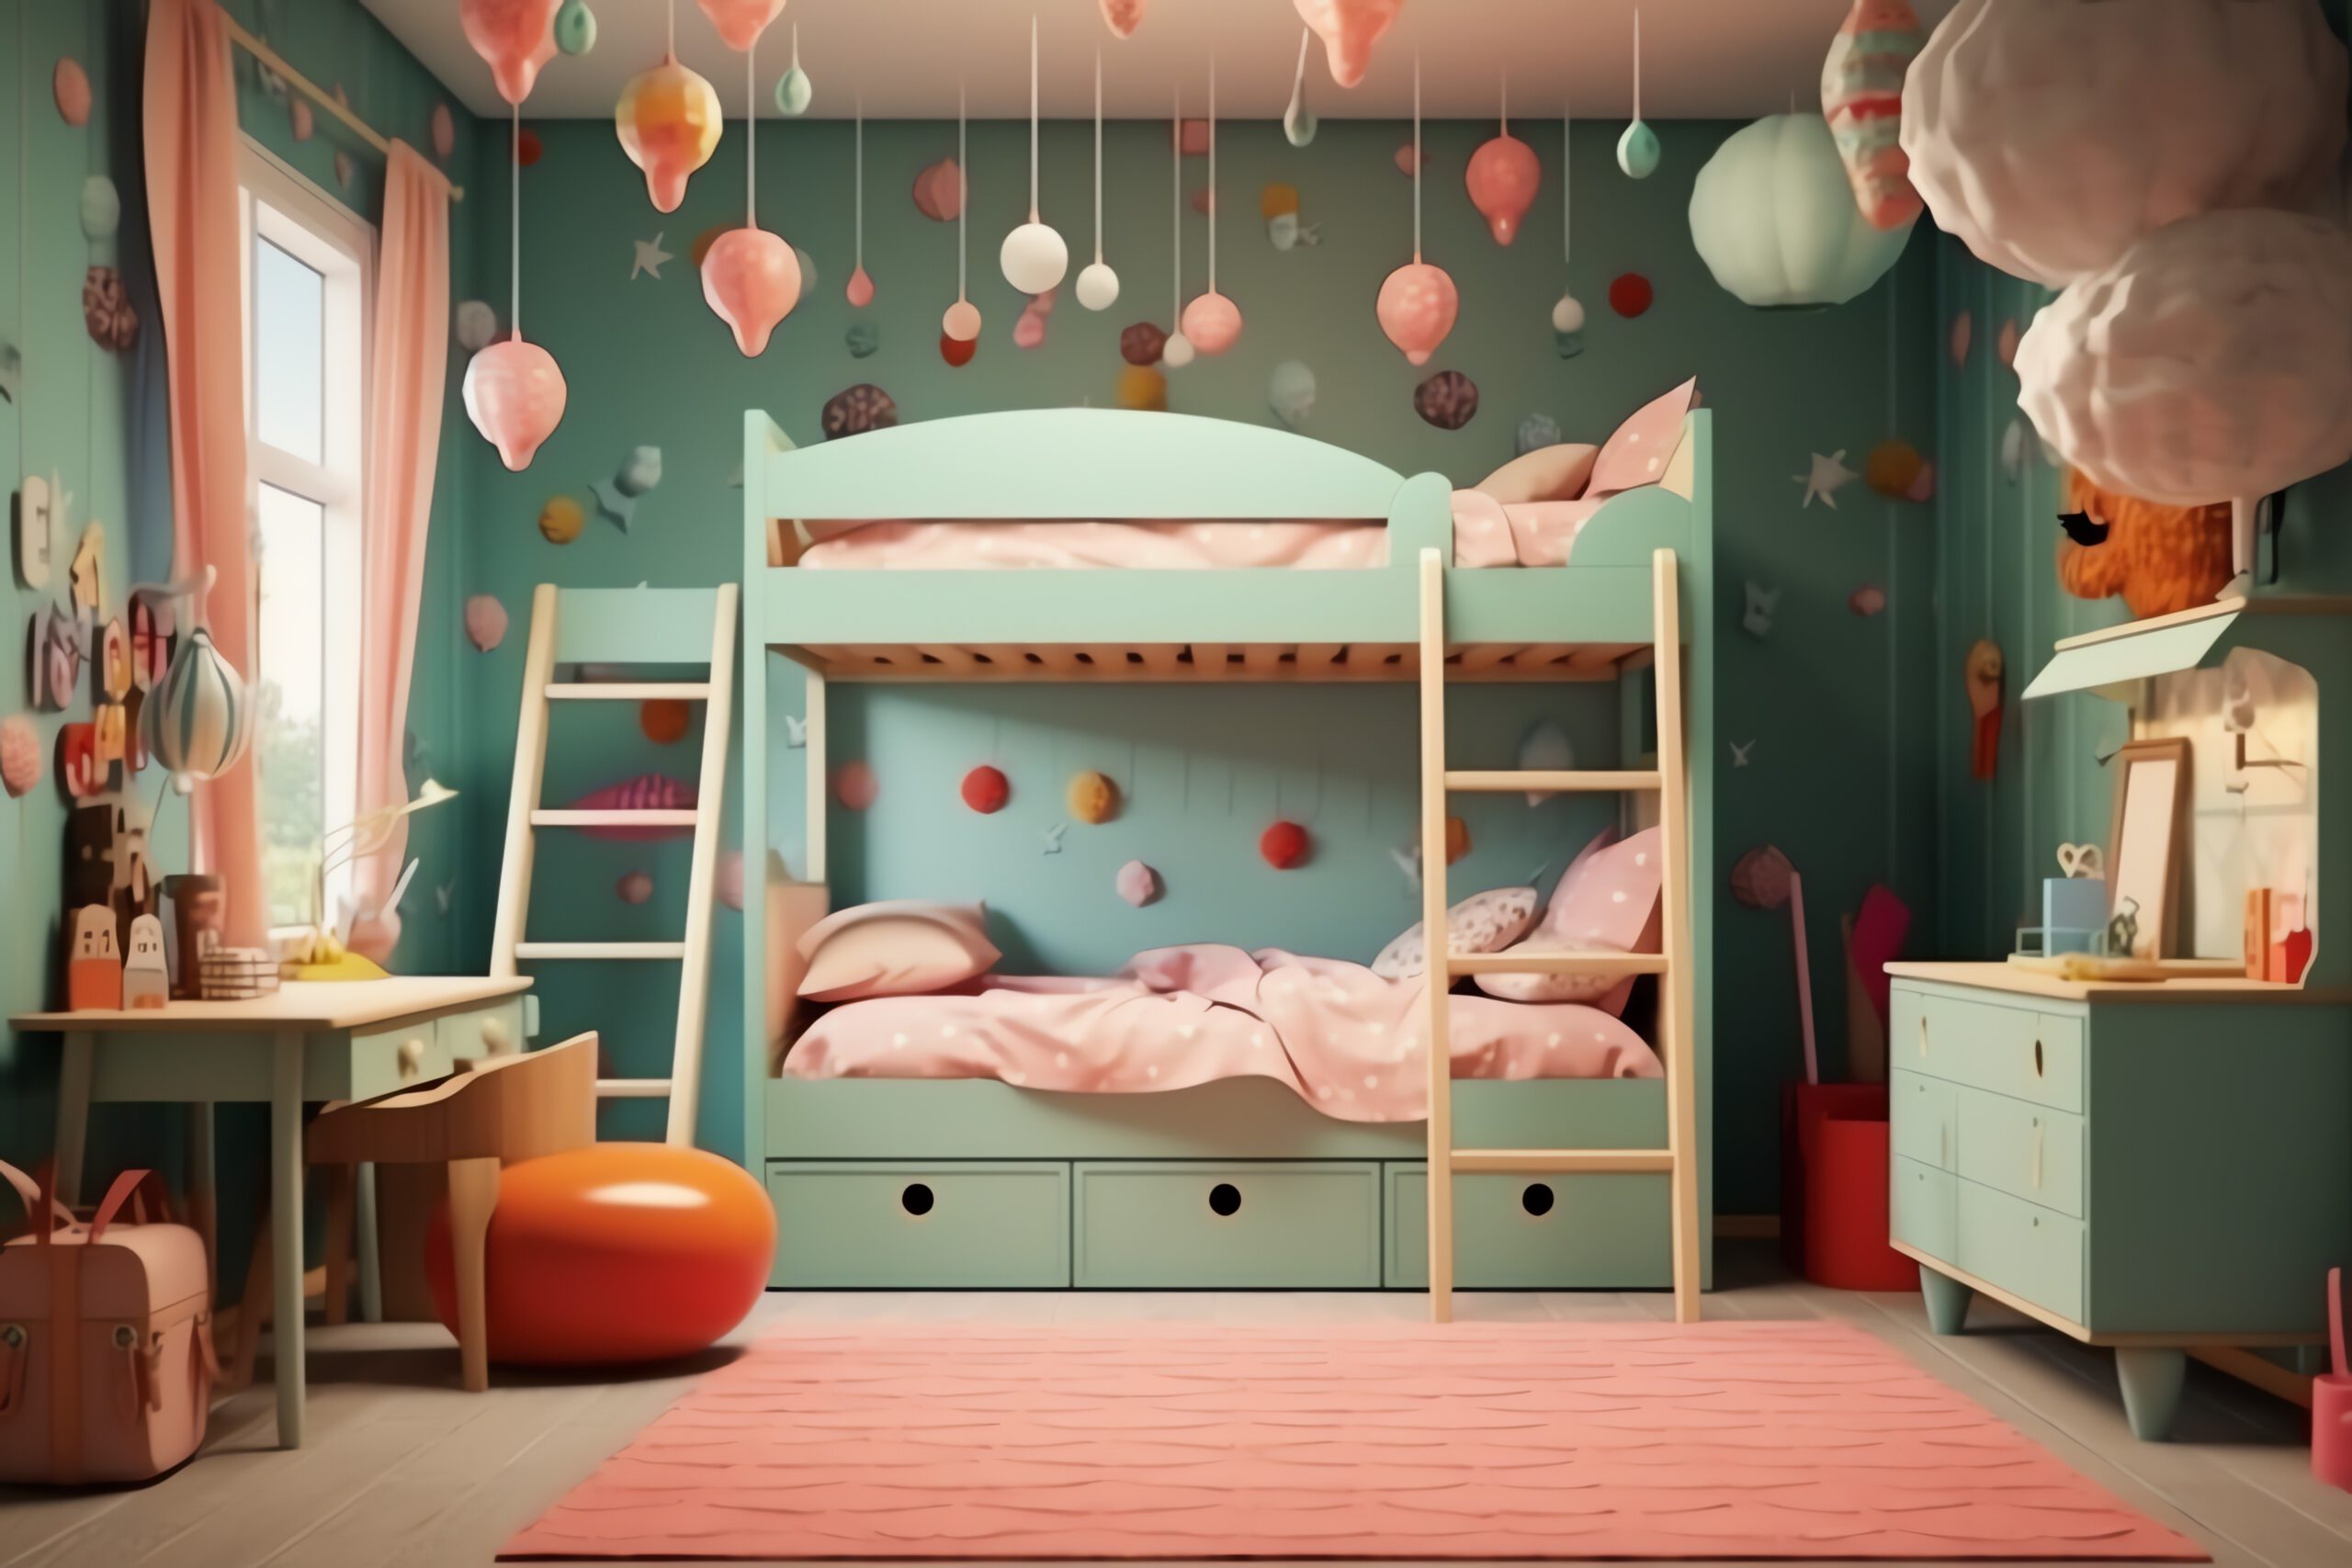 Przedstawione zdjęcie ukazuje przytulny pokój dla dwójki dzieci. Na środku pokoju znajduje się duże łóżko z wygodnymi materacami i kolorową pościelą. Na ścianach widoczne są półki z książkami oraz ozdobne naklejki z postaciami z bajek. Przestrzeń ta została urządzona w sposób funkcjonalny i estetyczny, zachęcając dzieci do zabawy i odpoczynku.